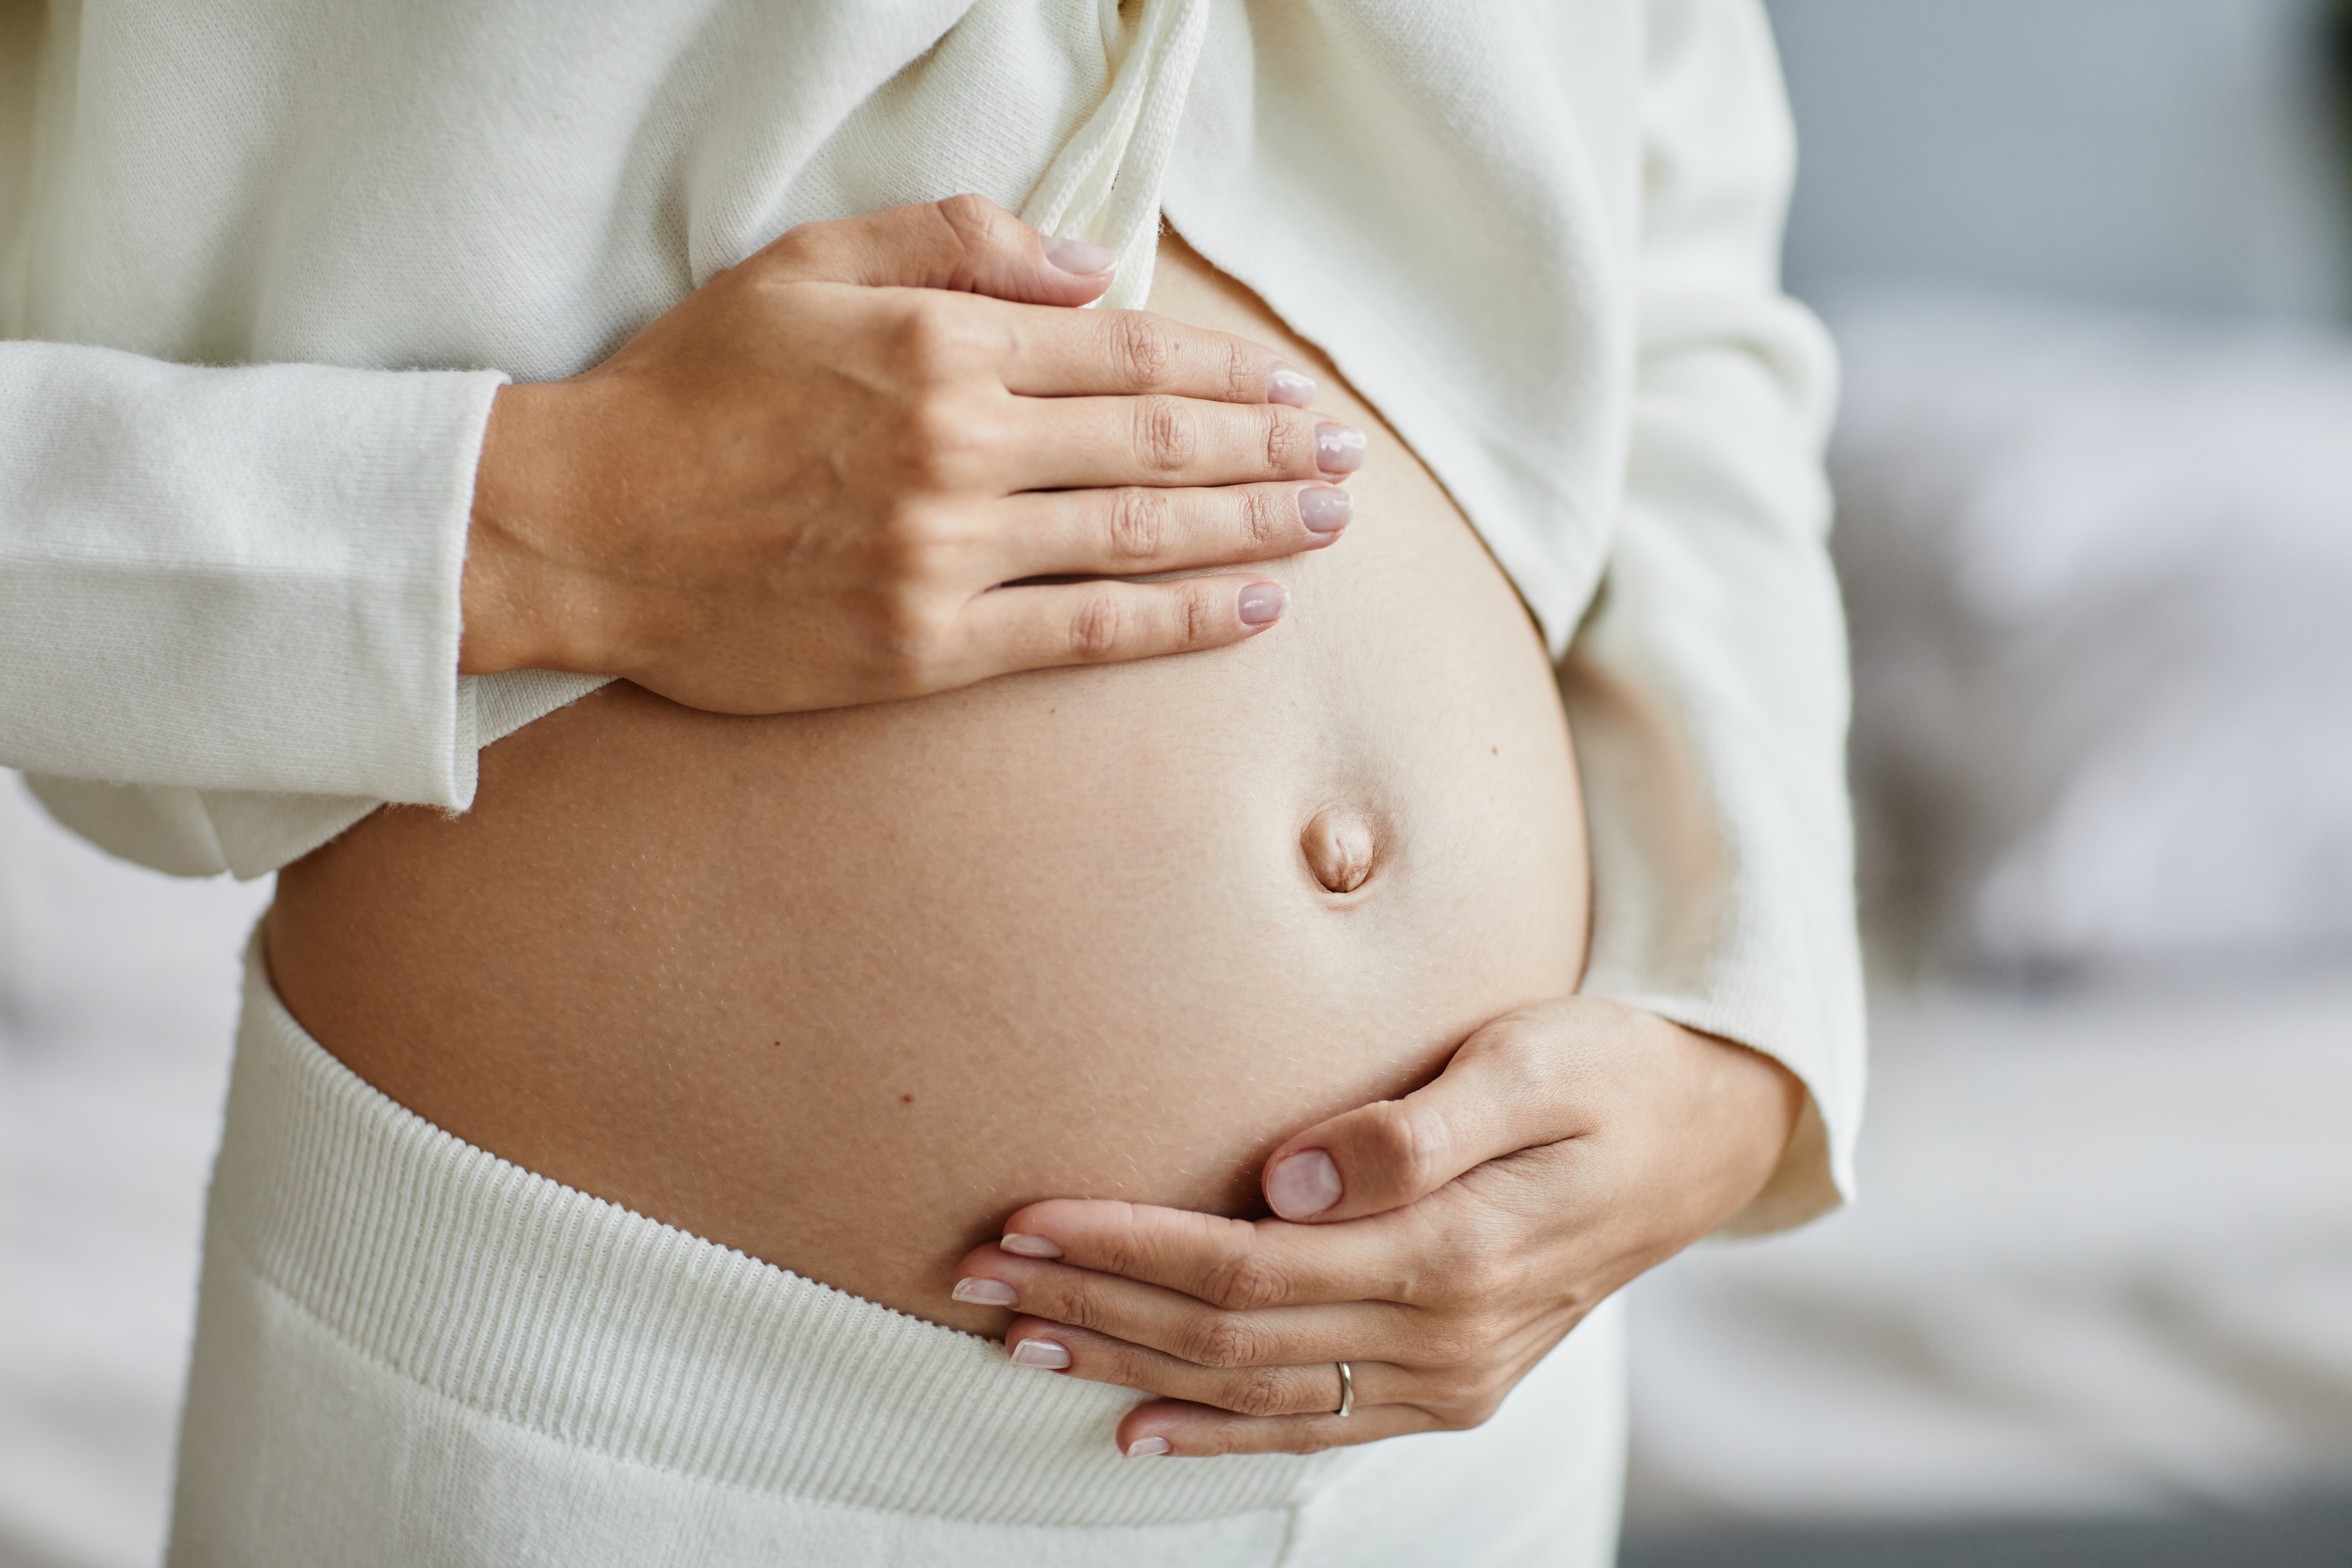 Une femme enceinte qui touche son ventre | Source : Shutterstock